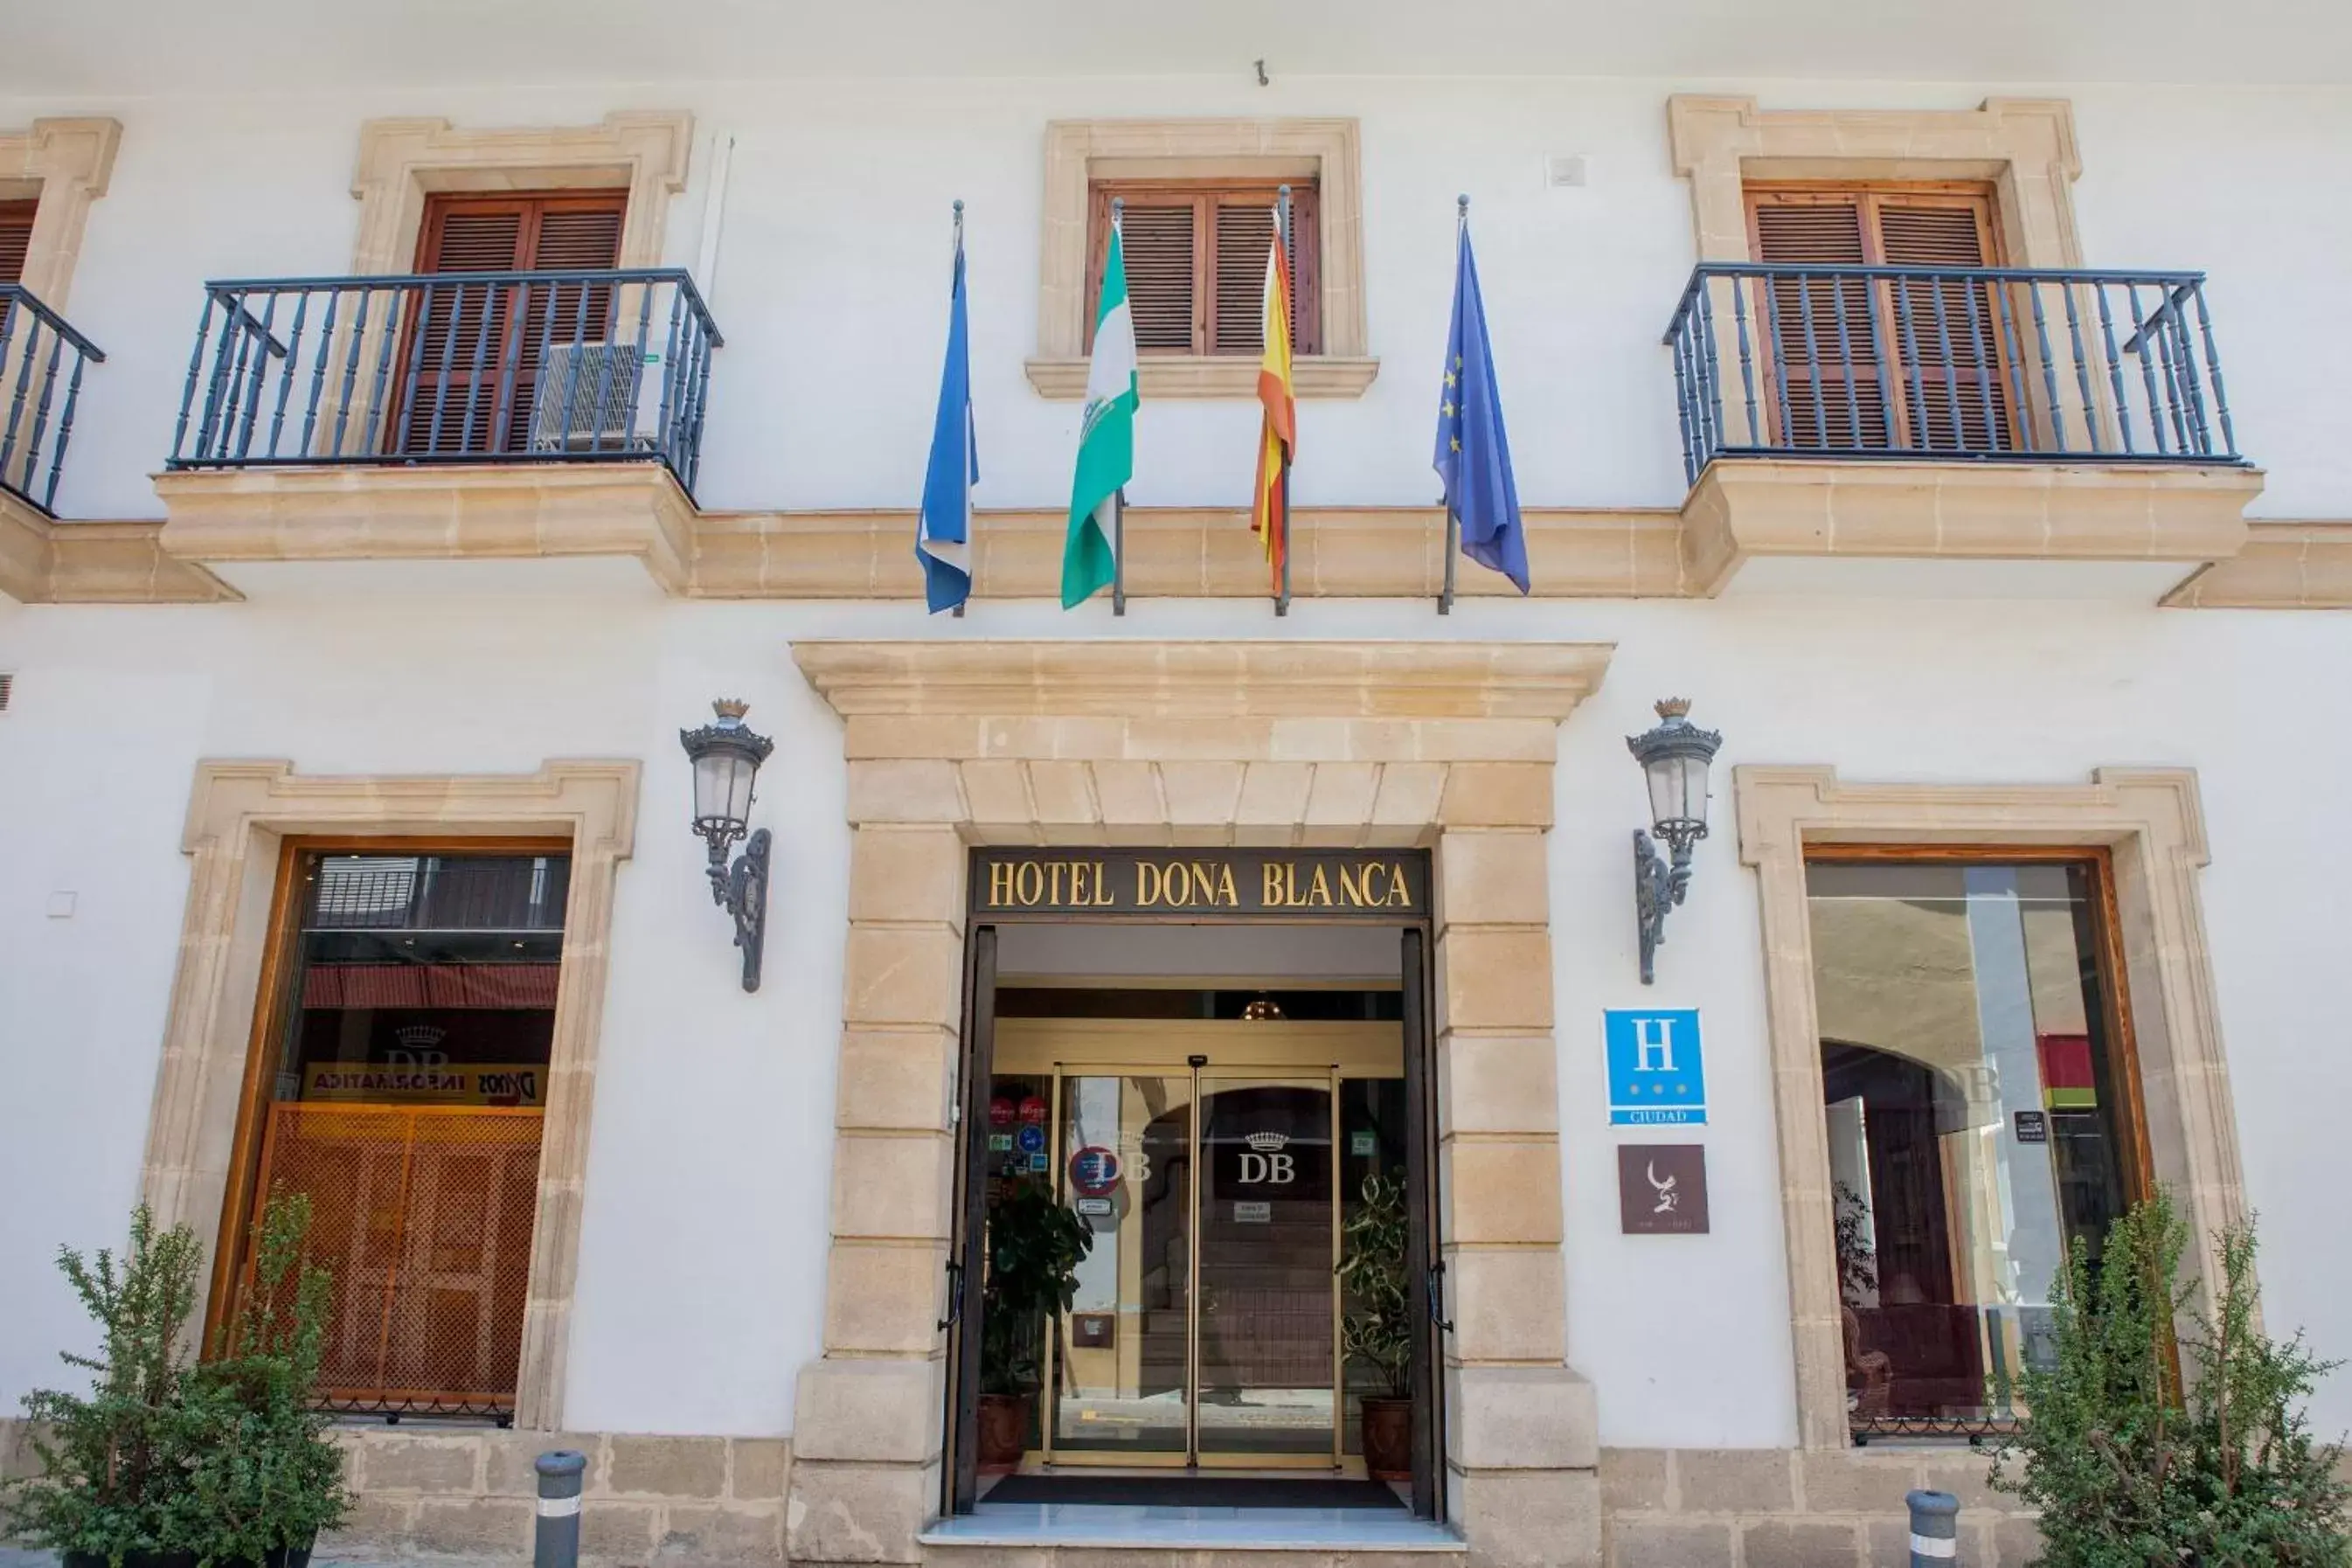 Facade/entrance in Hotel Doña Blanca